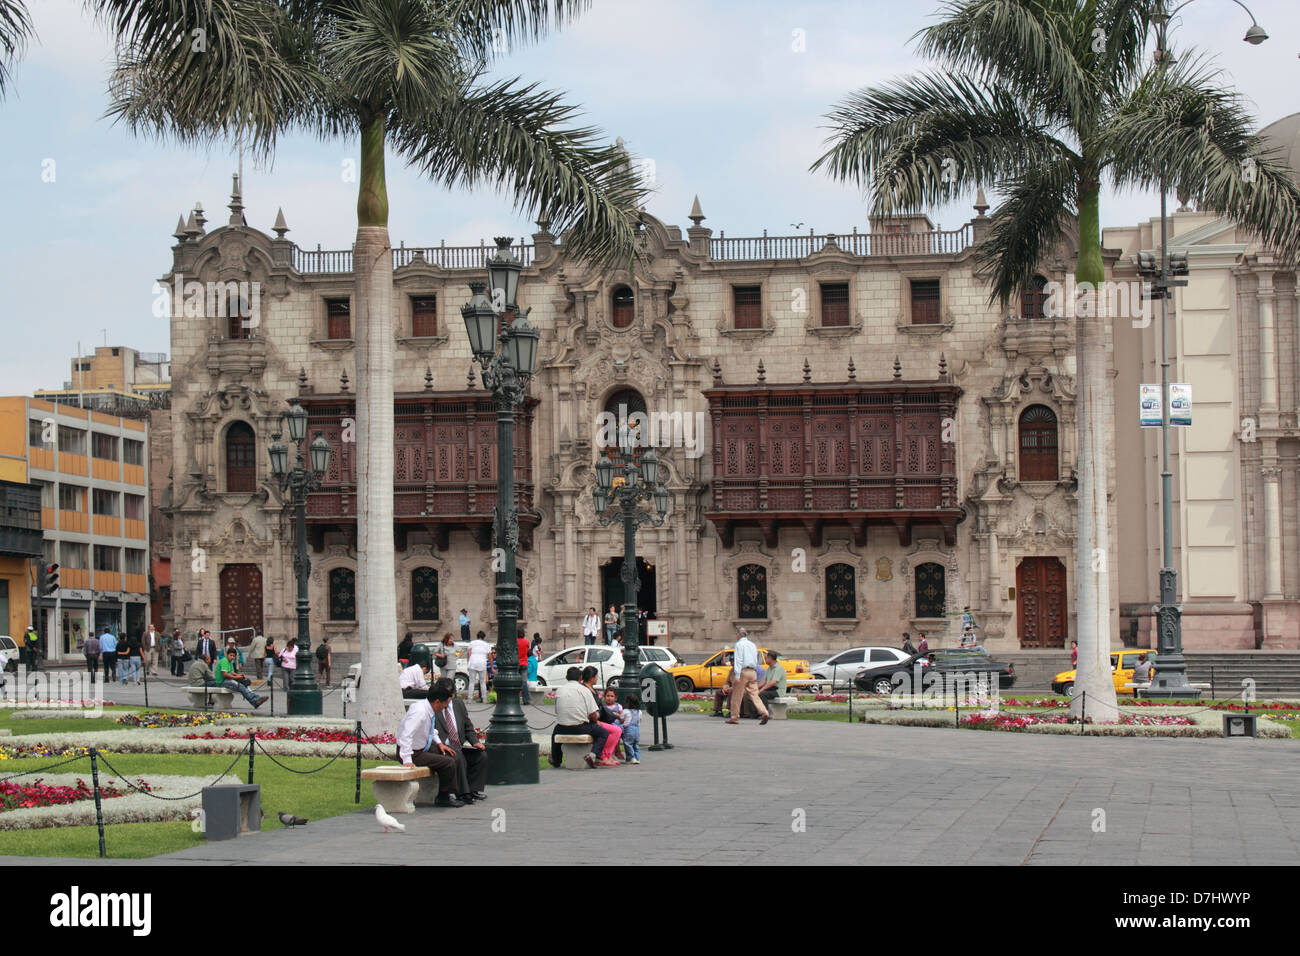 Peru Lima Plaza Mayor or Plaza de Armas Palacio de Arzobispo Archbishop’s Palace Stock Photo